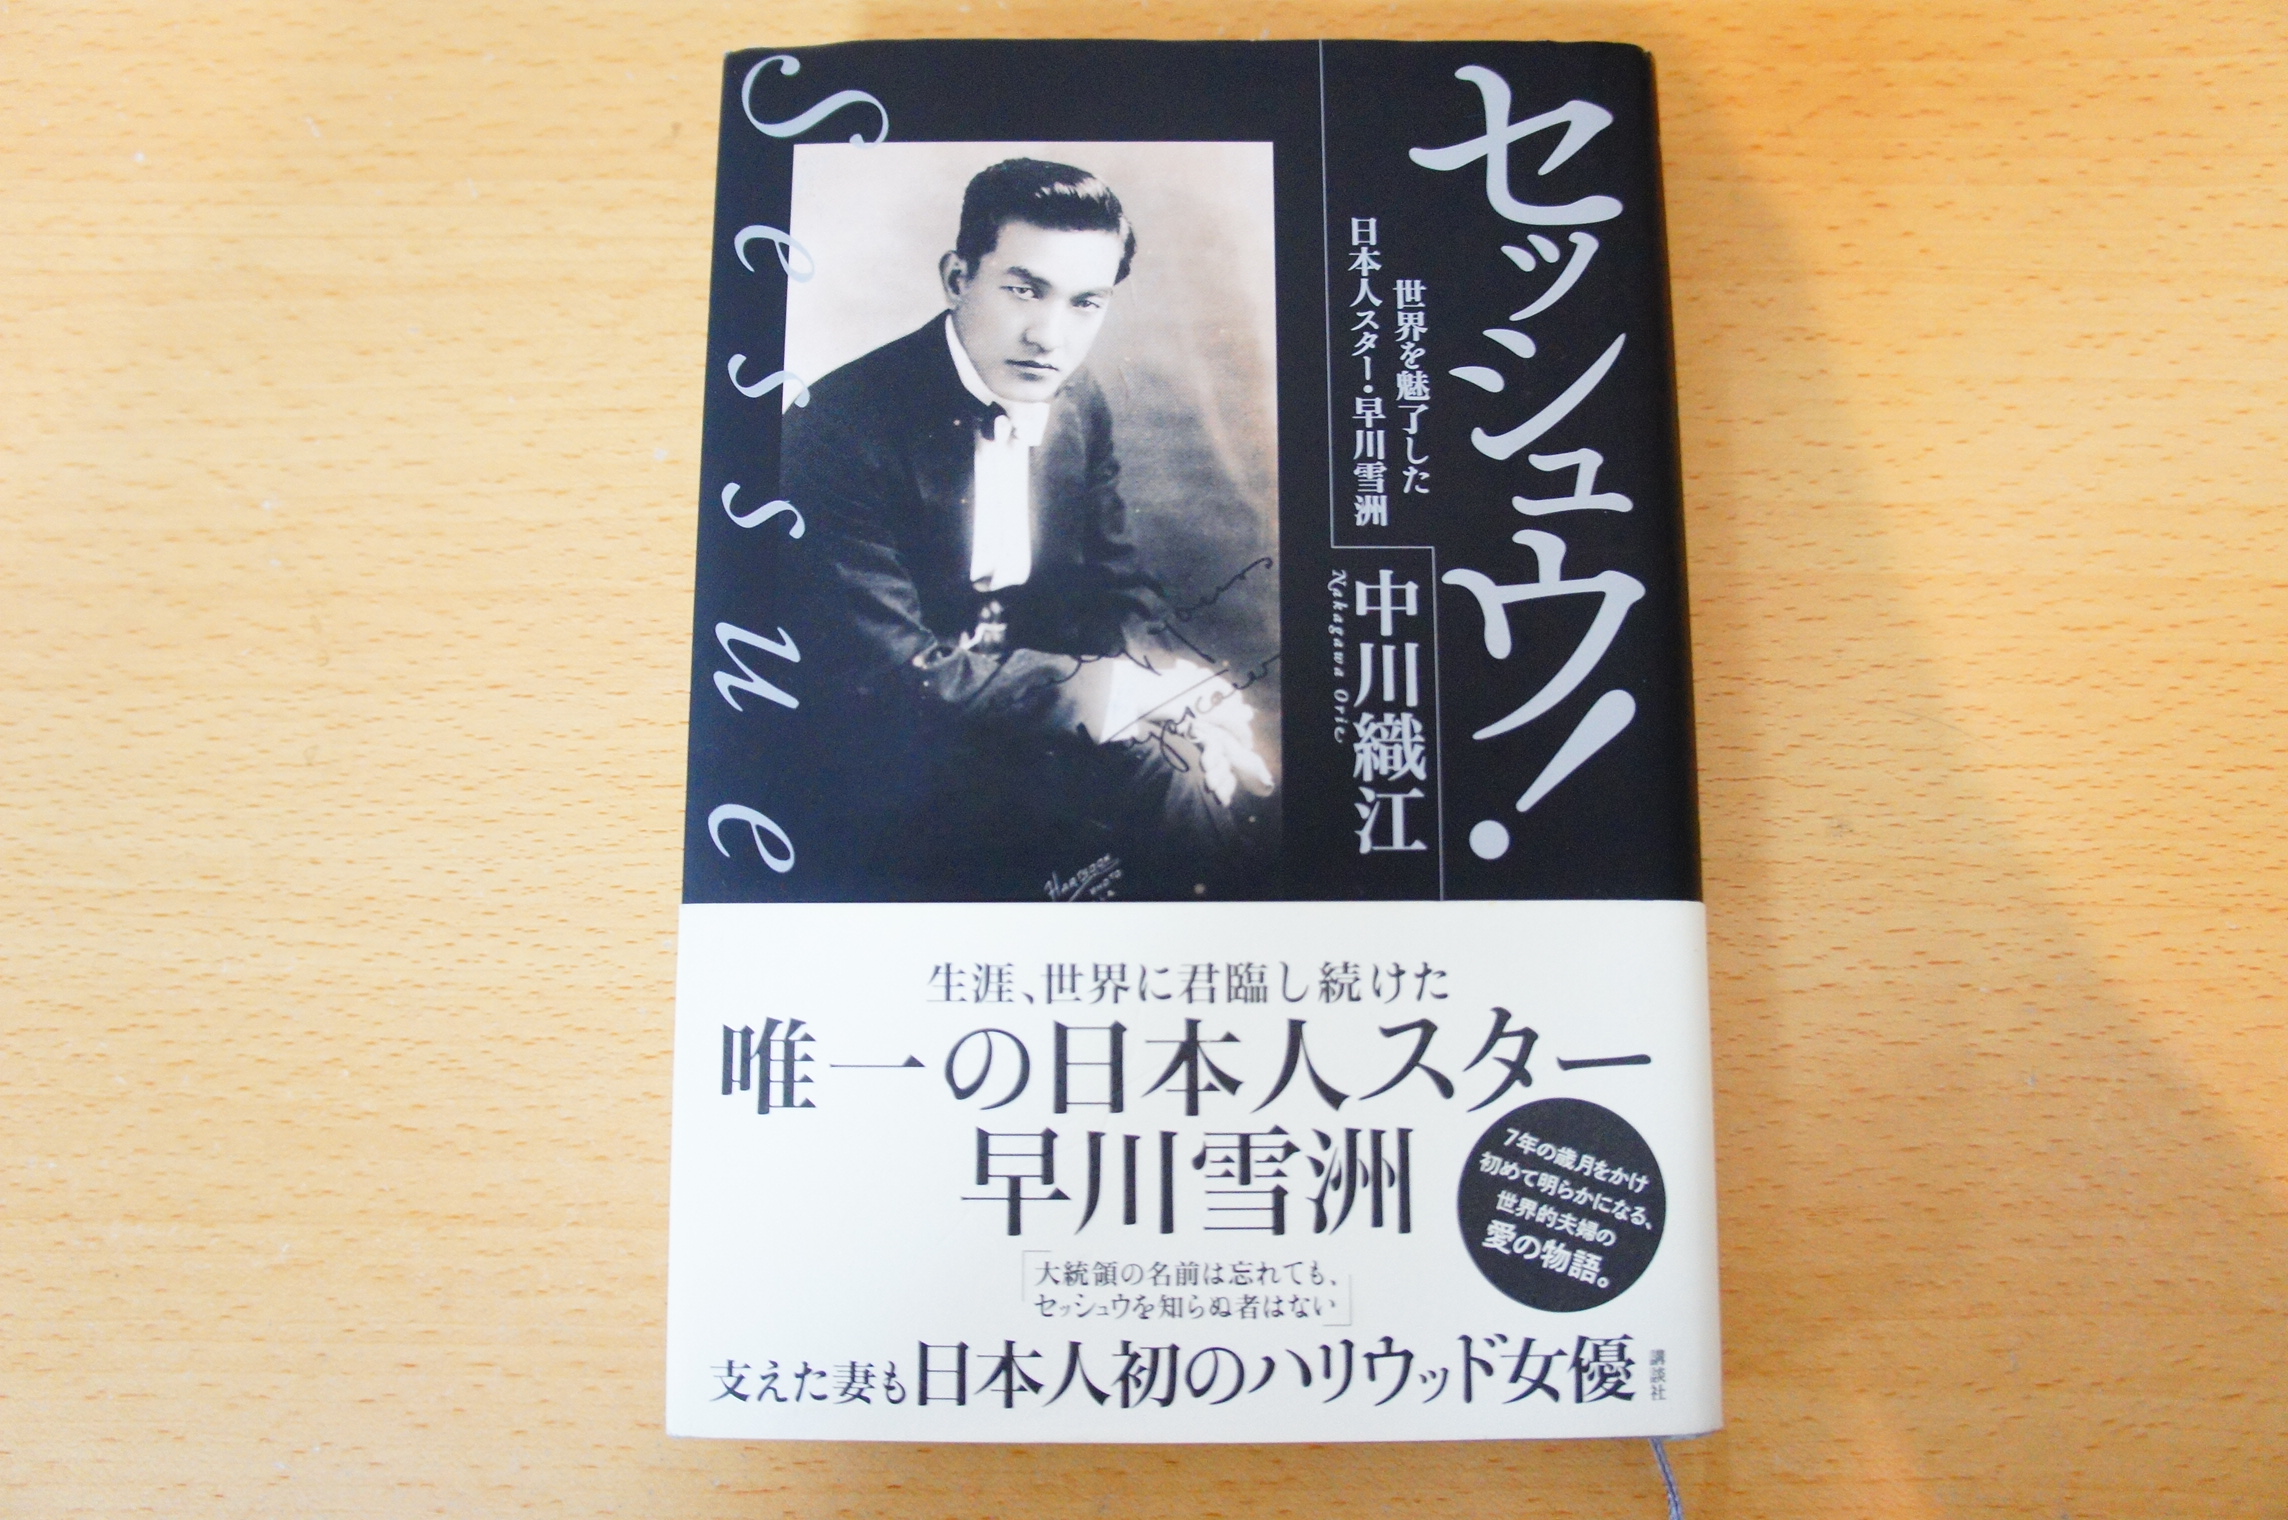 早川雪洲の生涯を書いた本